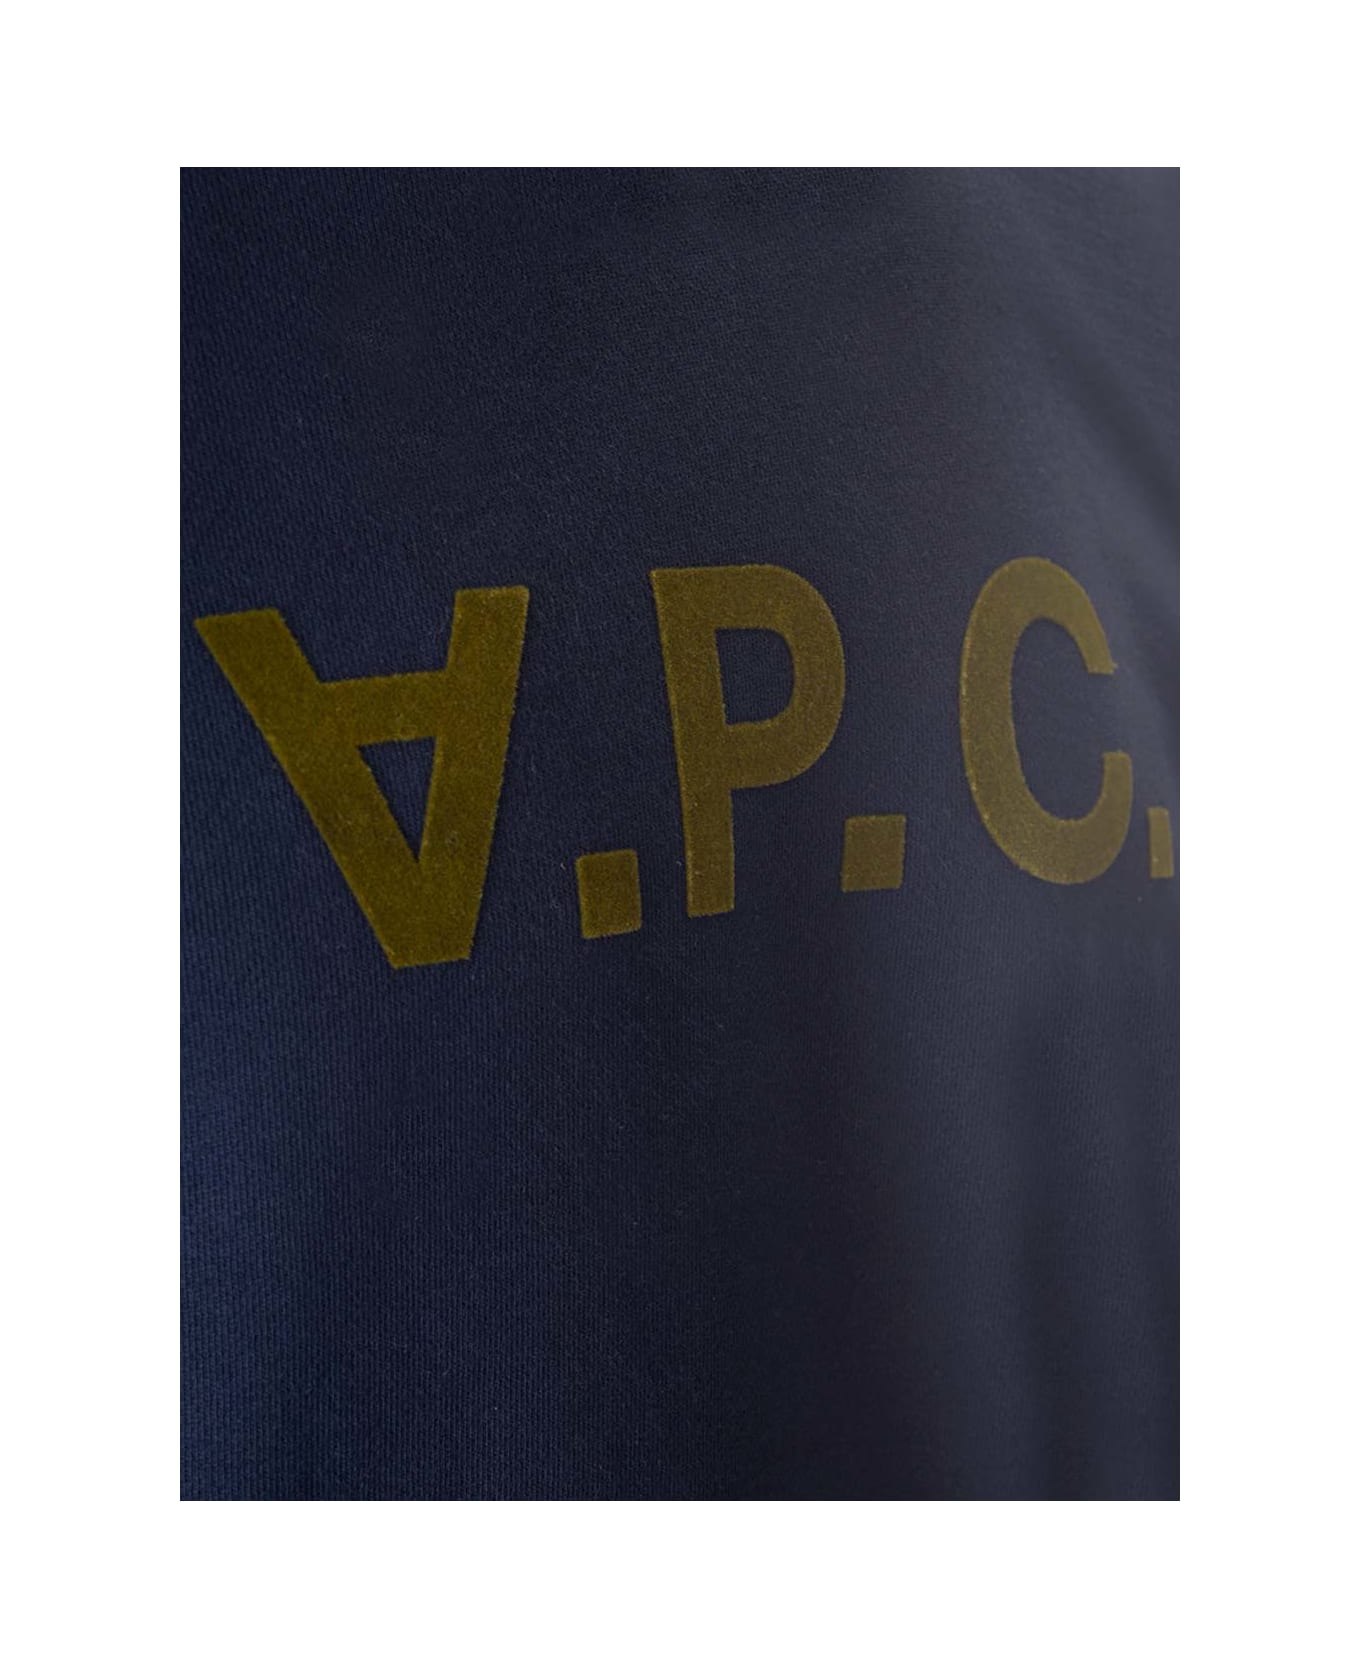 A.P.C. Sweatshirt With V.p.c Logo - Blue フリース